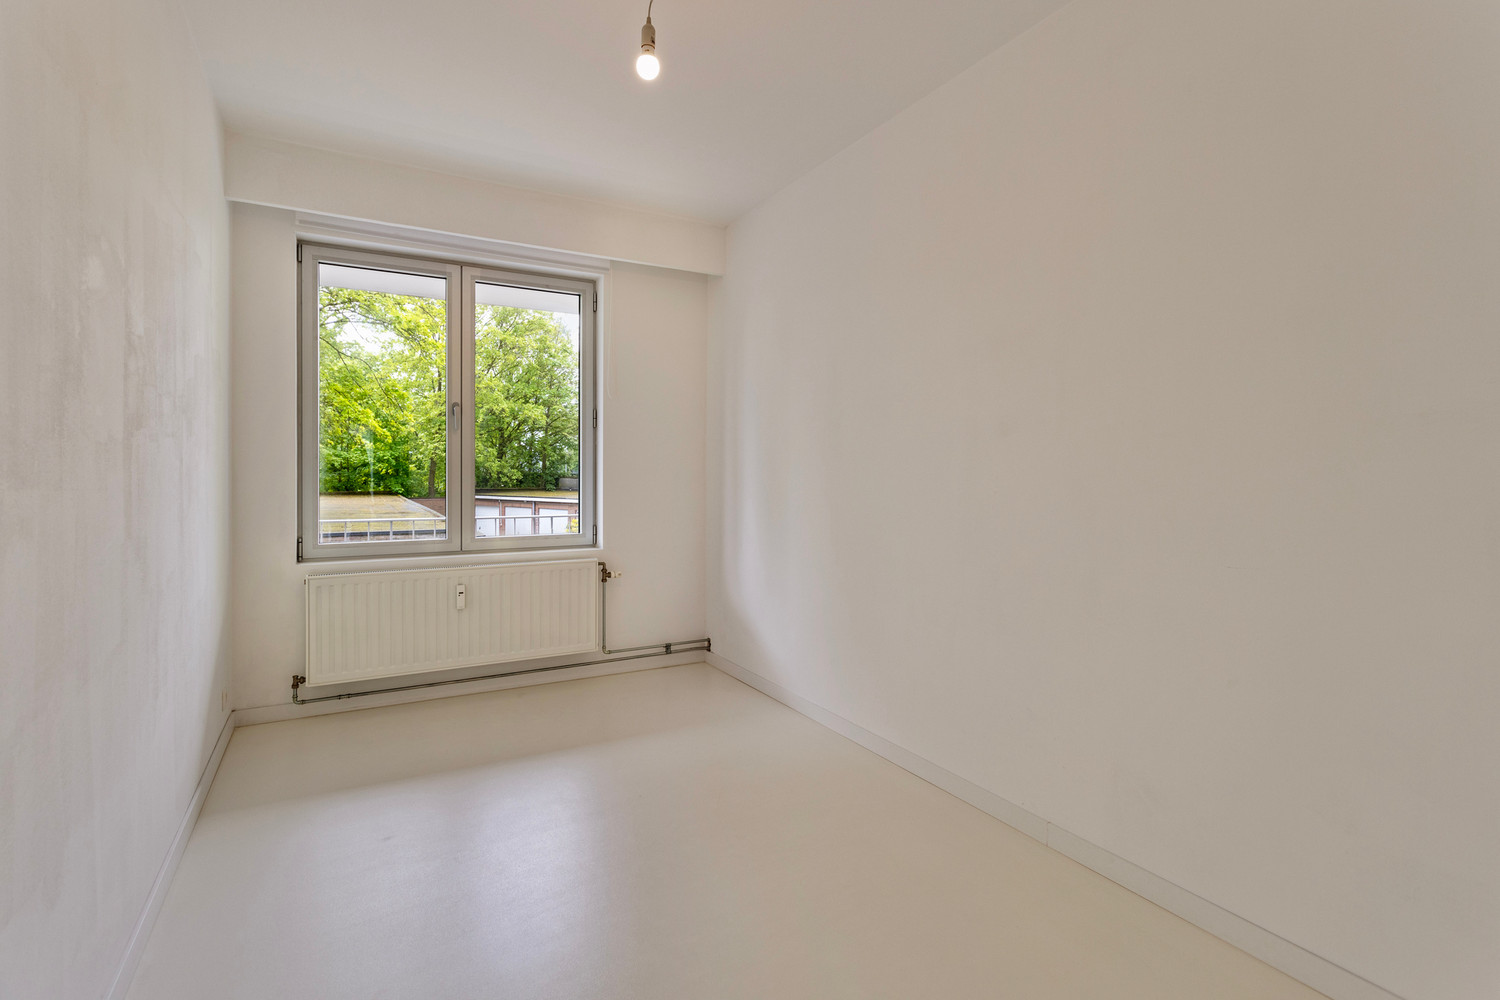 Instapklaar trendy appartement op wandelafstand van het Boekenberg Park met 3 slks, ruim terras en garagebox! foto 26